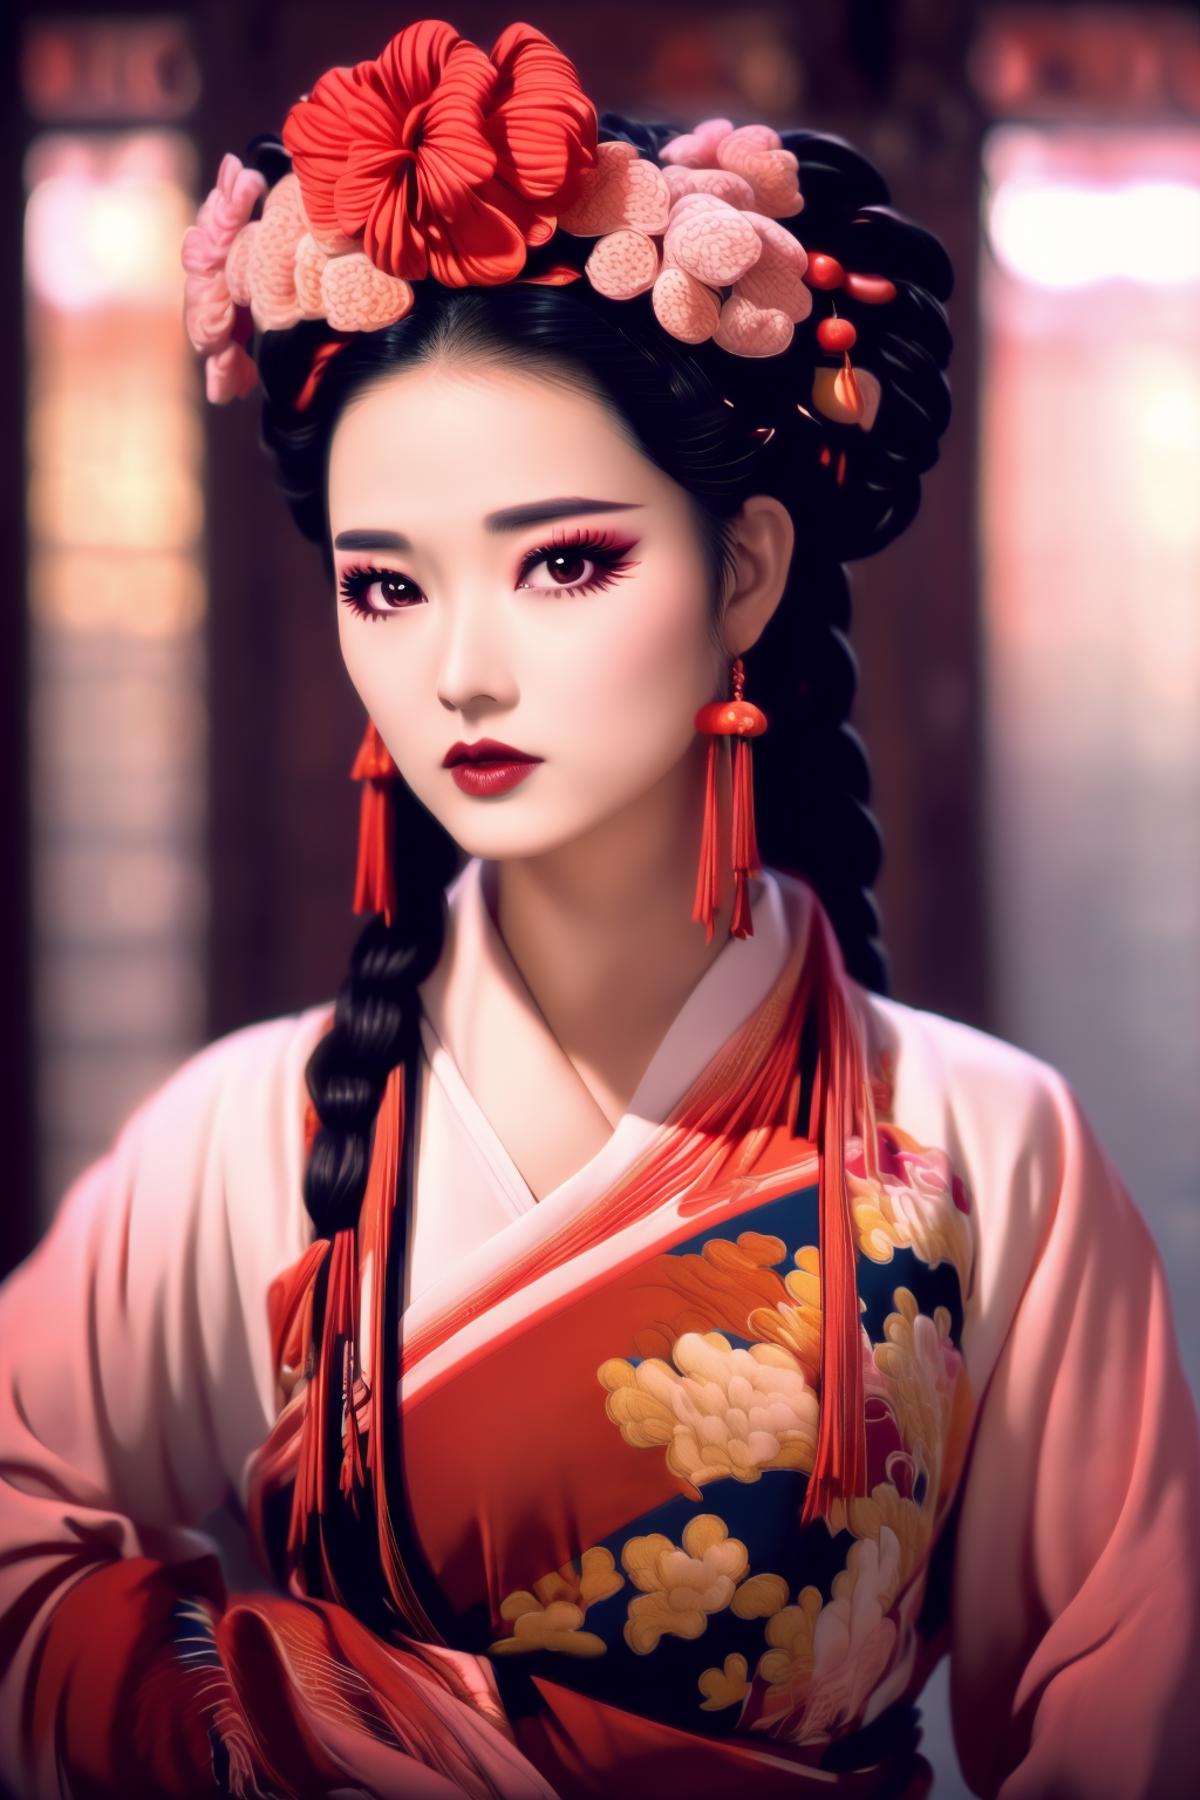 China Opera 京粤剧元素 style image by YuntaoHu